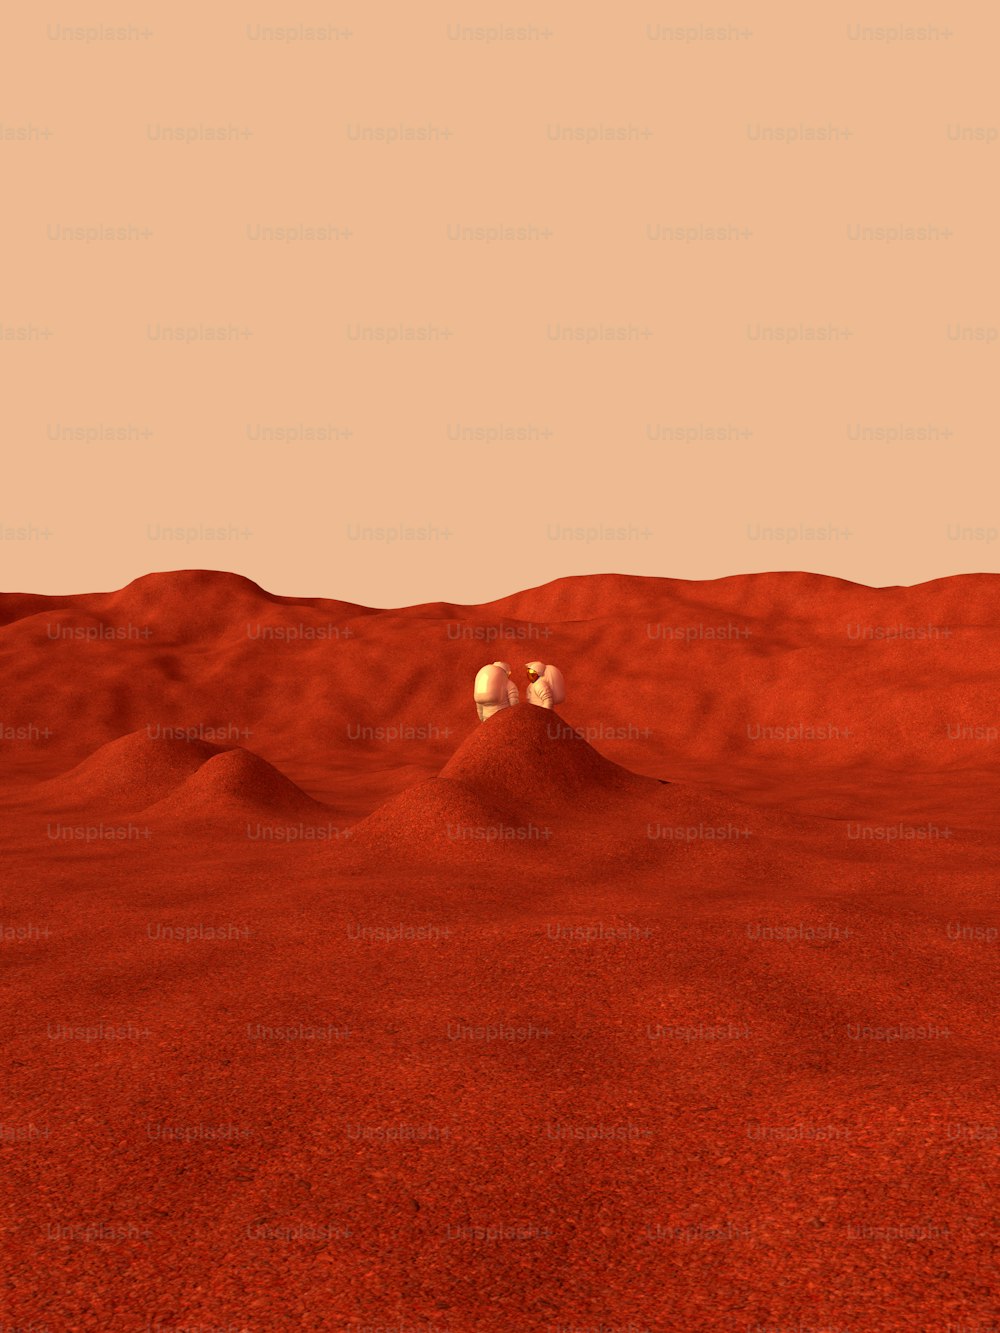 Une image générée par ordinateur d’un désert rouge